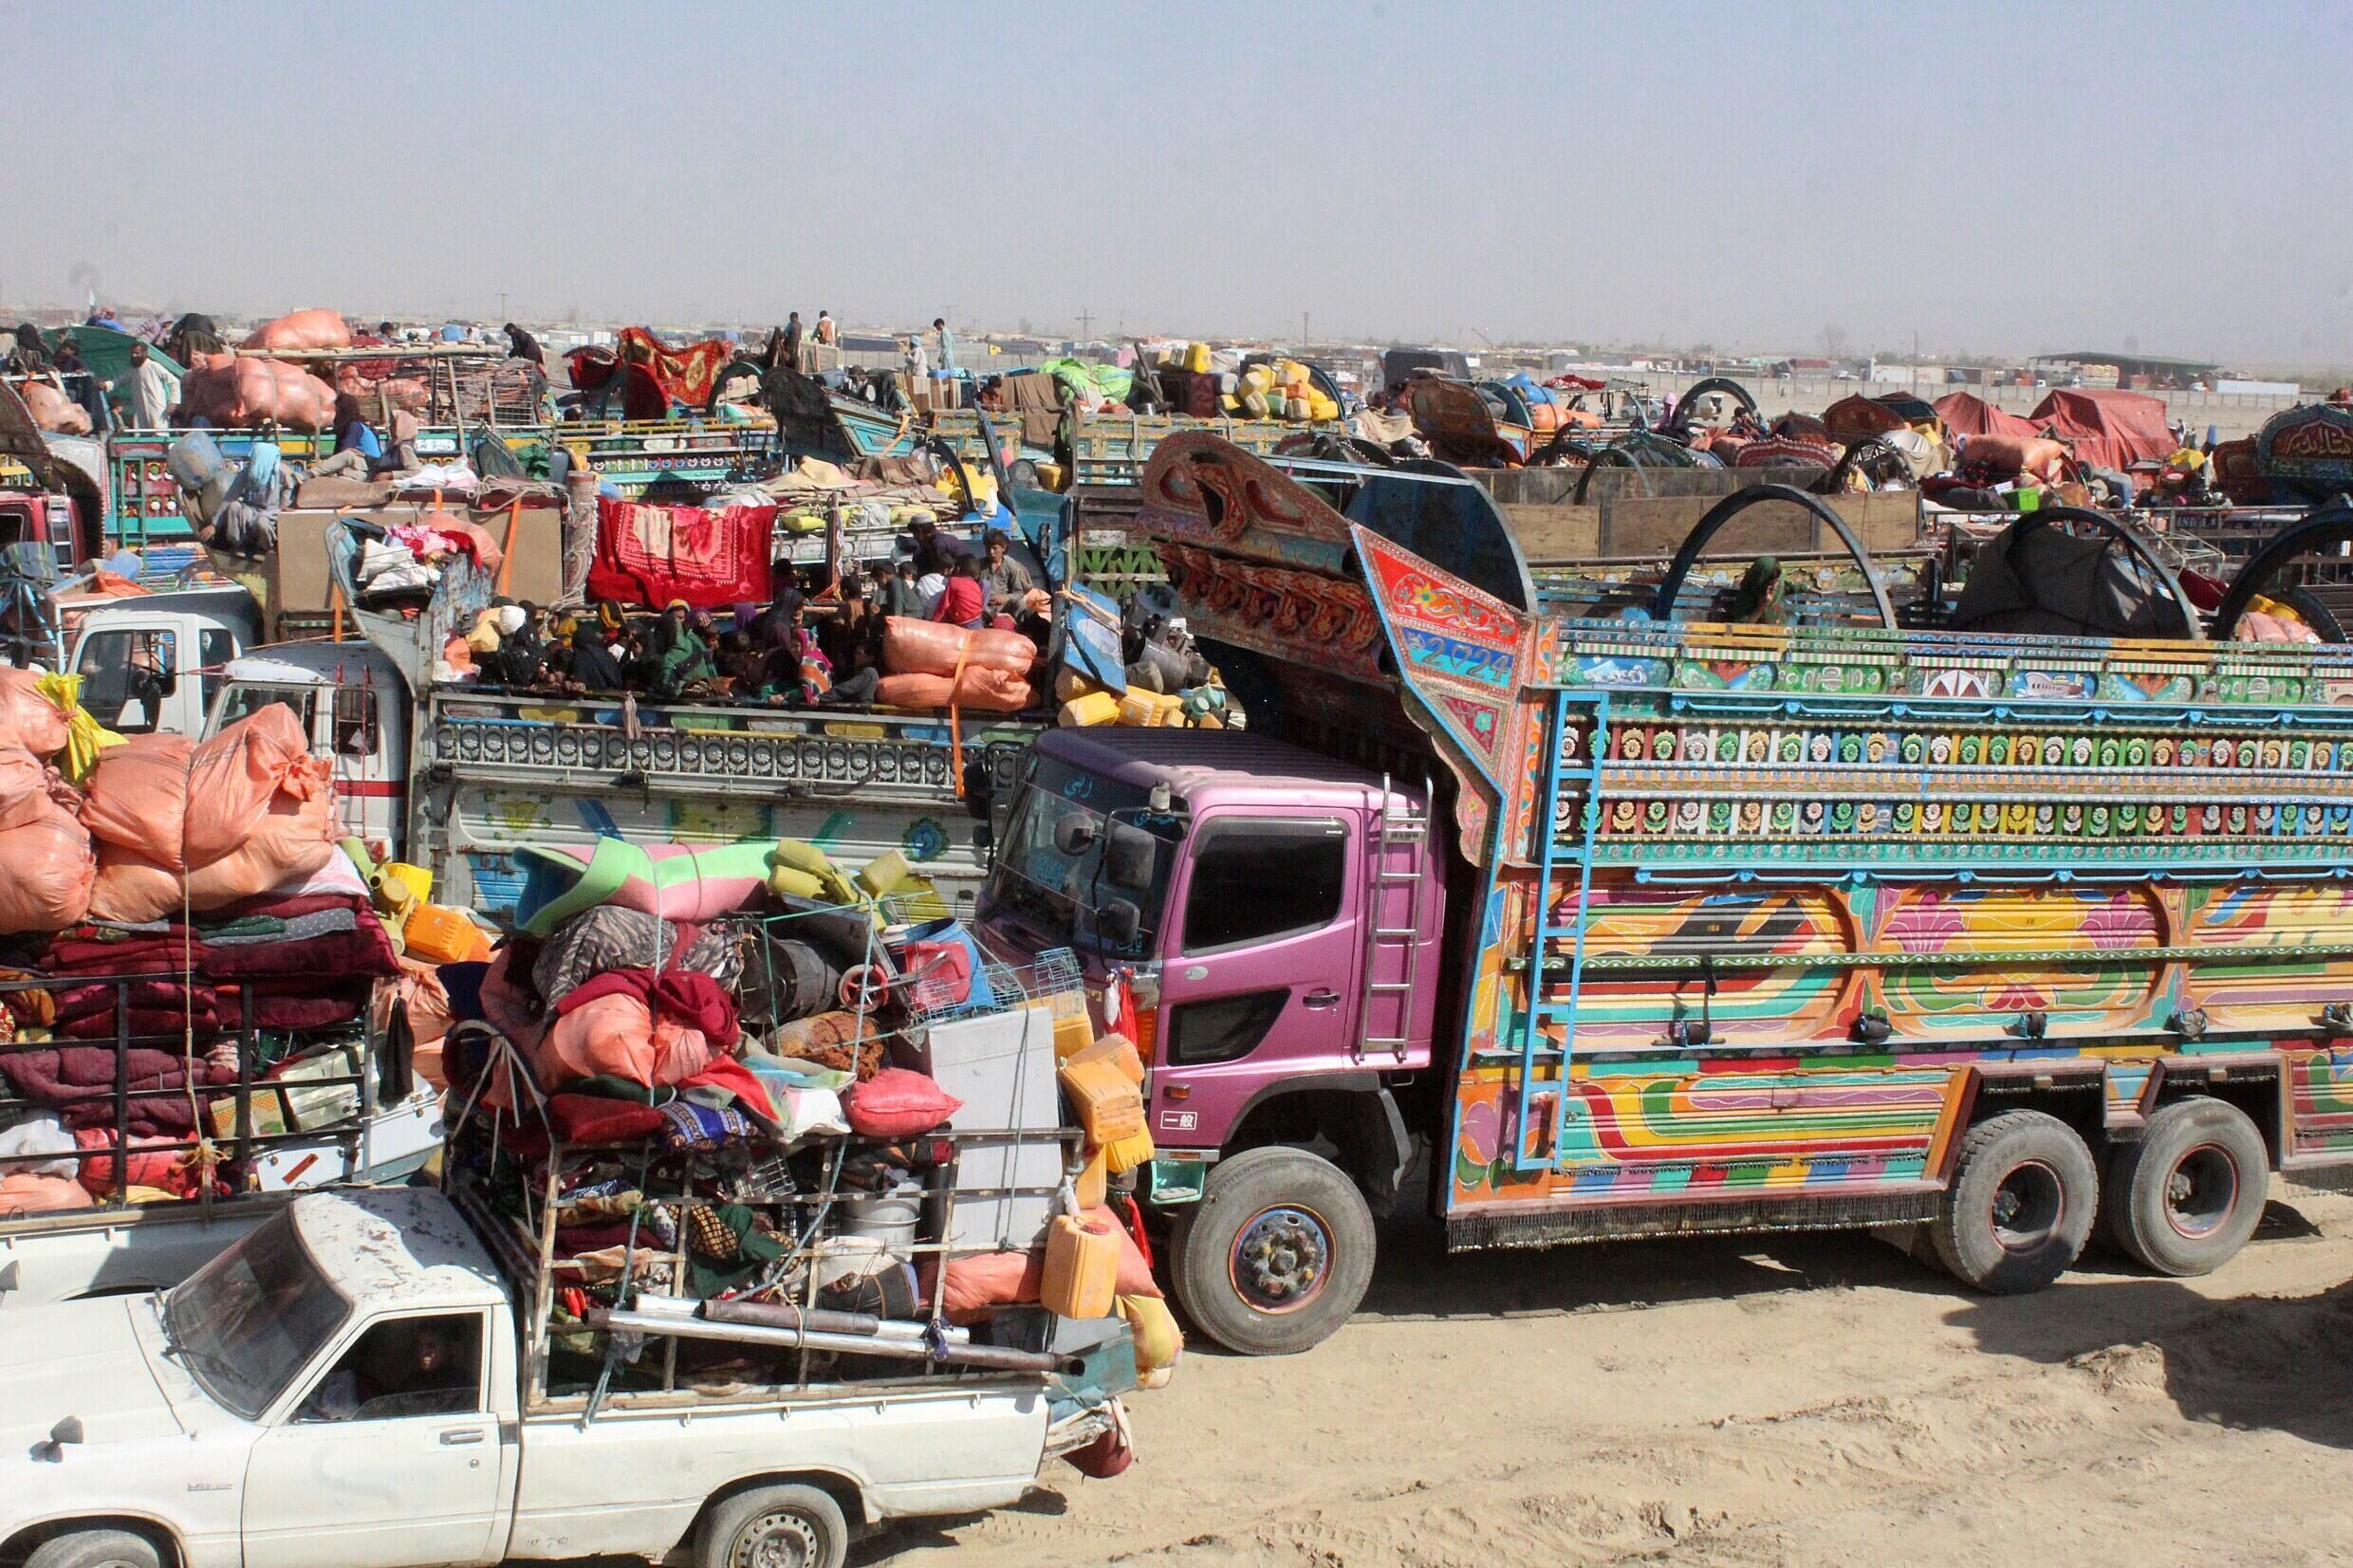 Als die Frist für die Ausreise aus Pakistan näher rückte, kamen afghanische Flüchtlinge in Lastwagen und Autos an, um die pakistanisch-afghanische Grenze in Chaman zu überqueren.